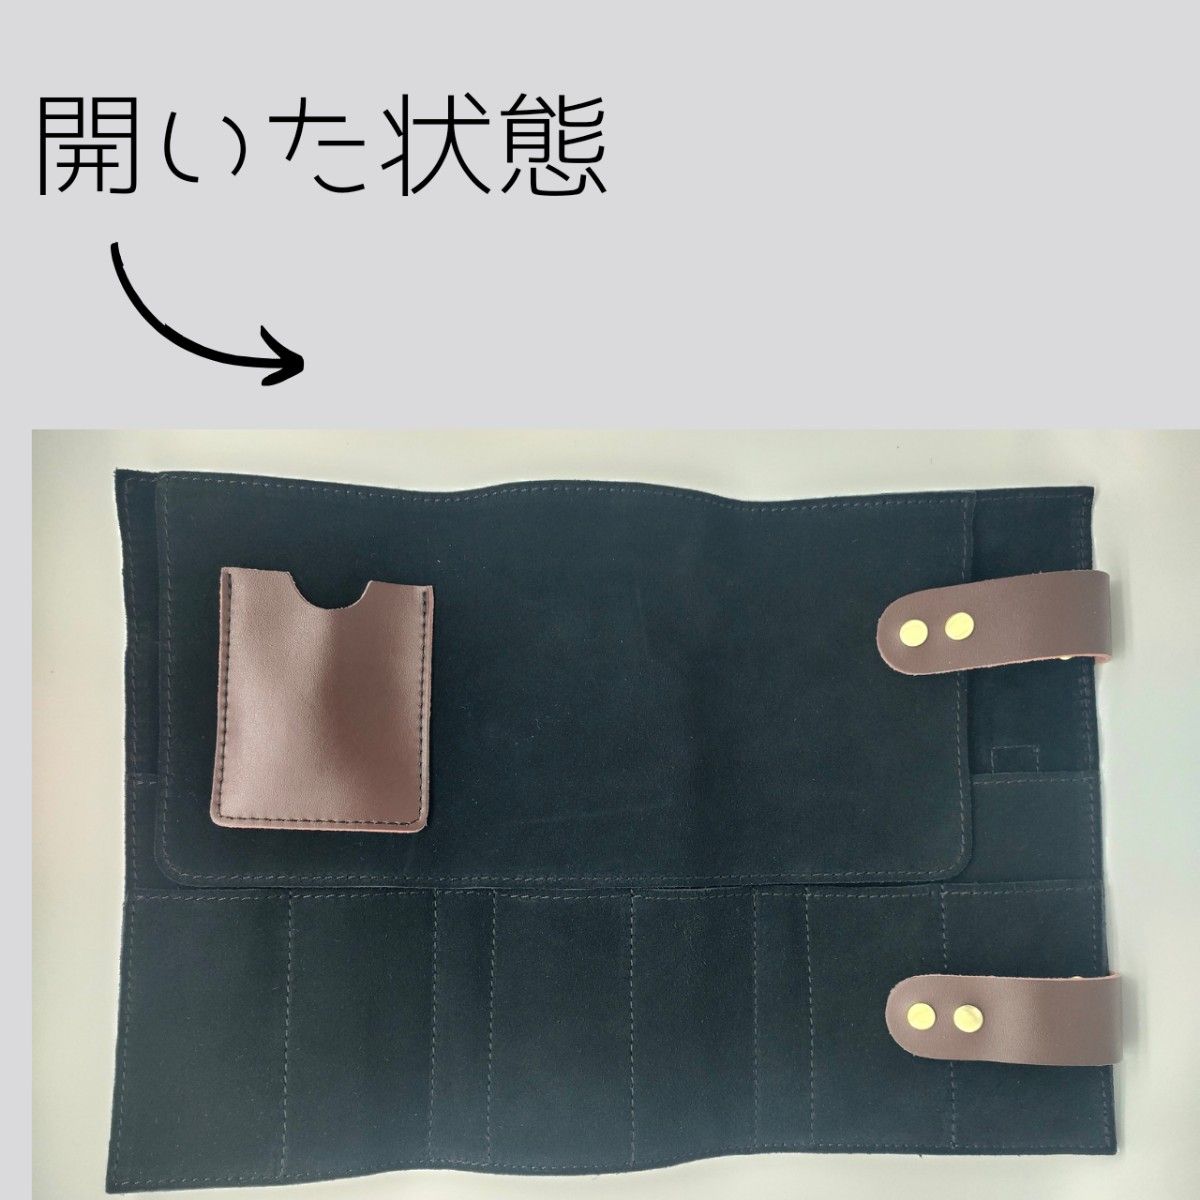 【即購入可】置き型本革シザーケース(豚毛ブラシ付属)ブラック